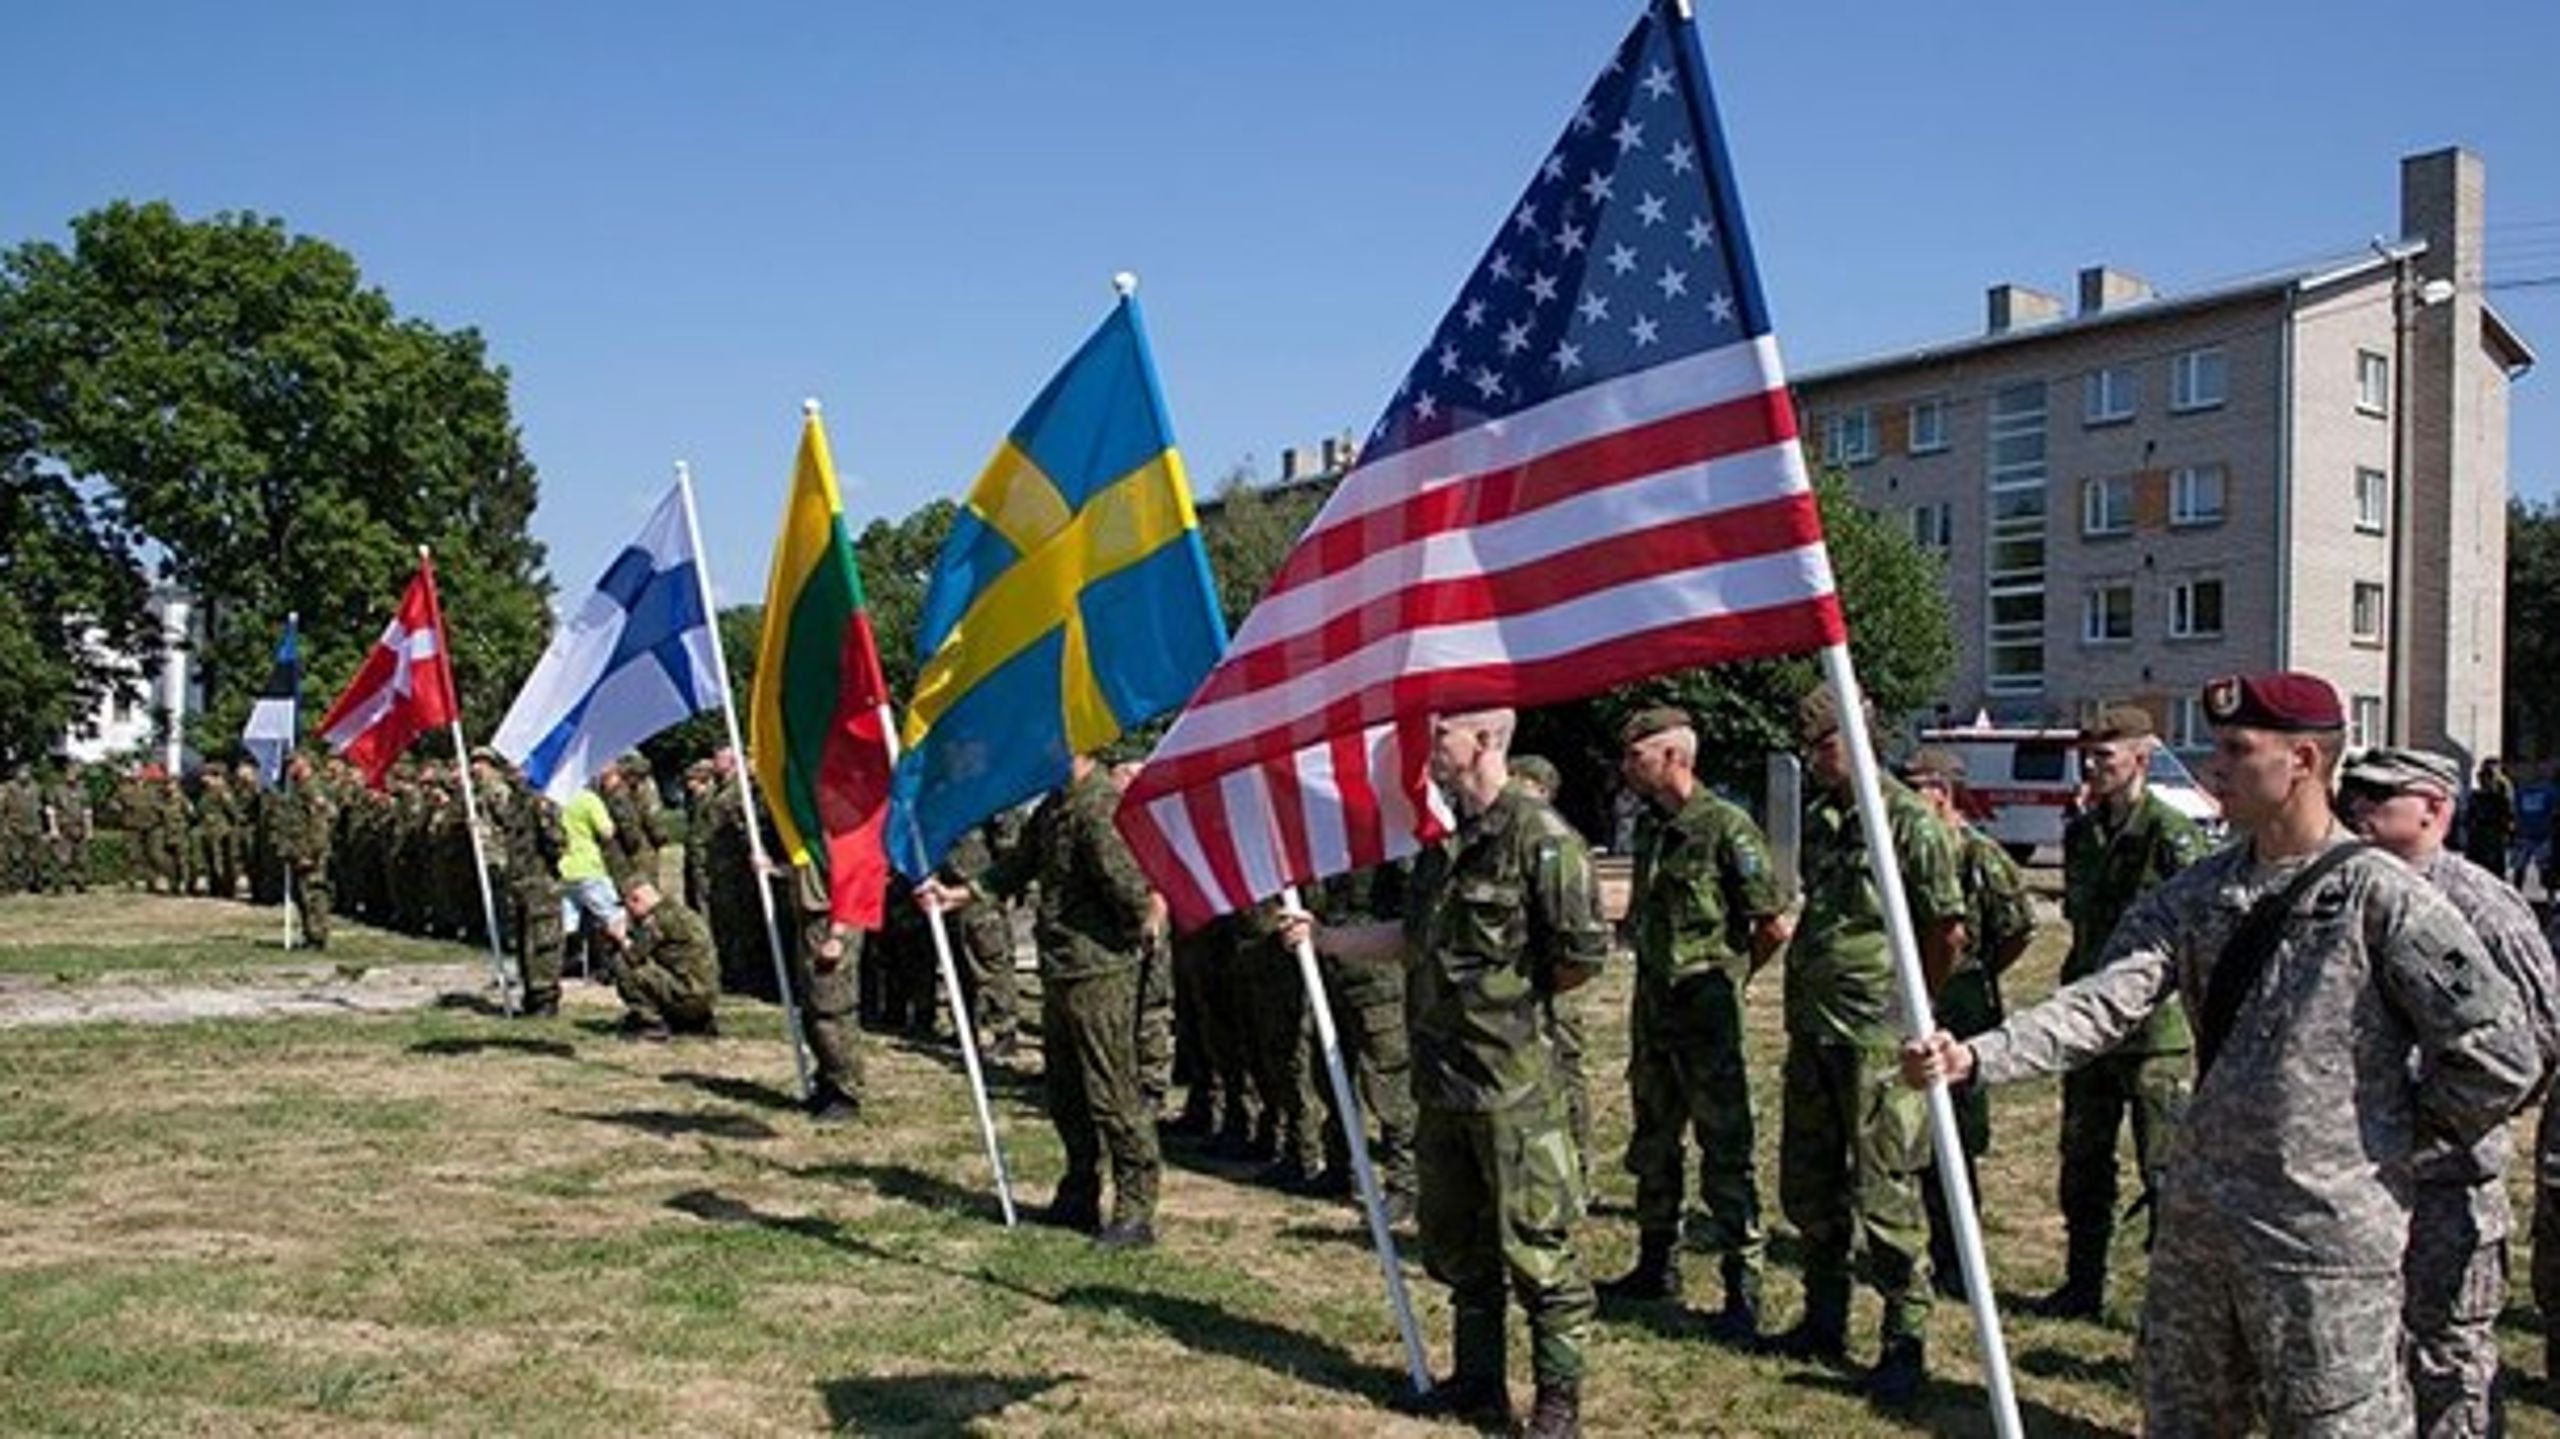 Den enøjede amerikanske vægtlægning af Nato-landenes investeringer, målt i BNP, i militært forsvar er selvfølgelig håbløs
endimensionel, skriver militærforsker Jens Ringsmose.